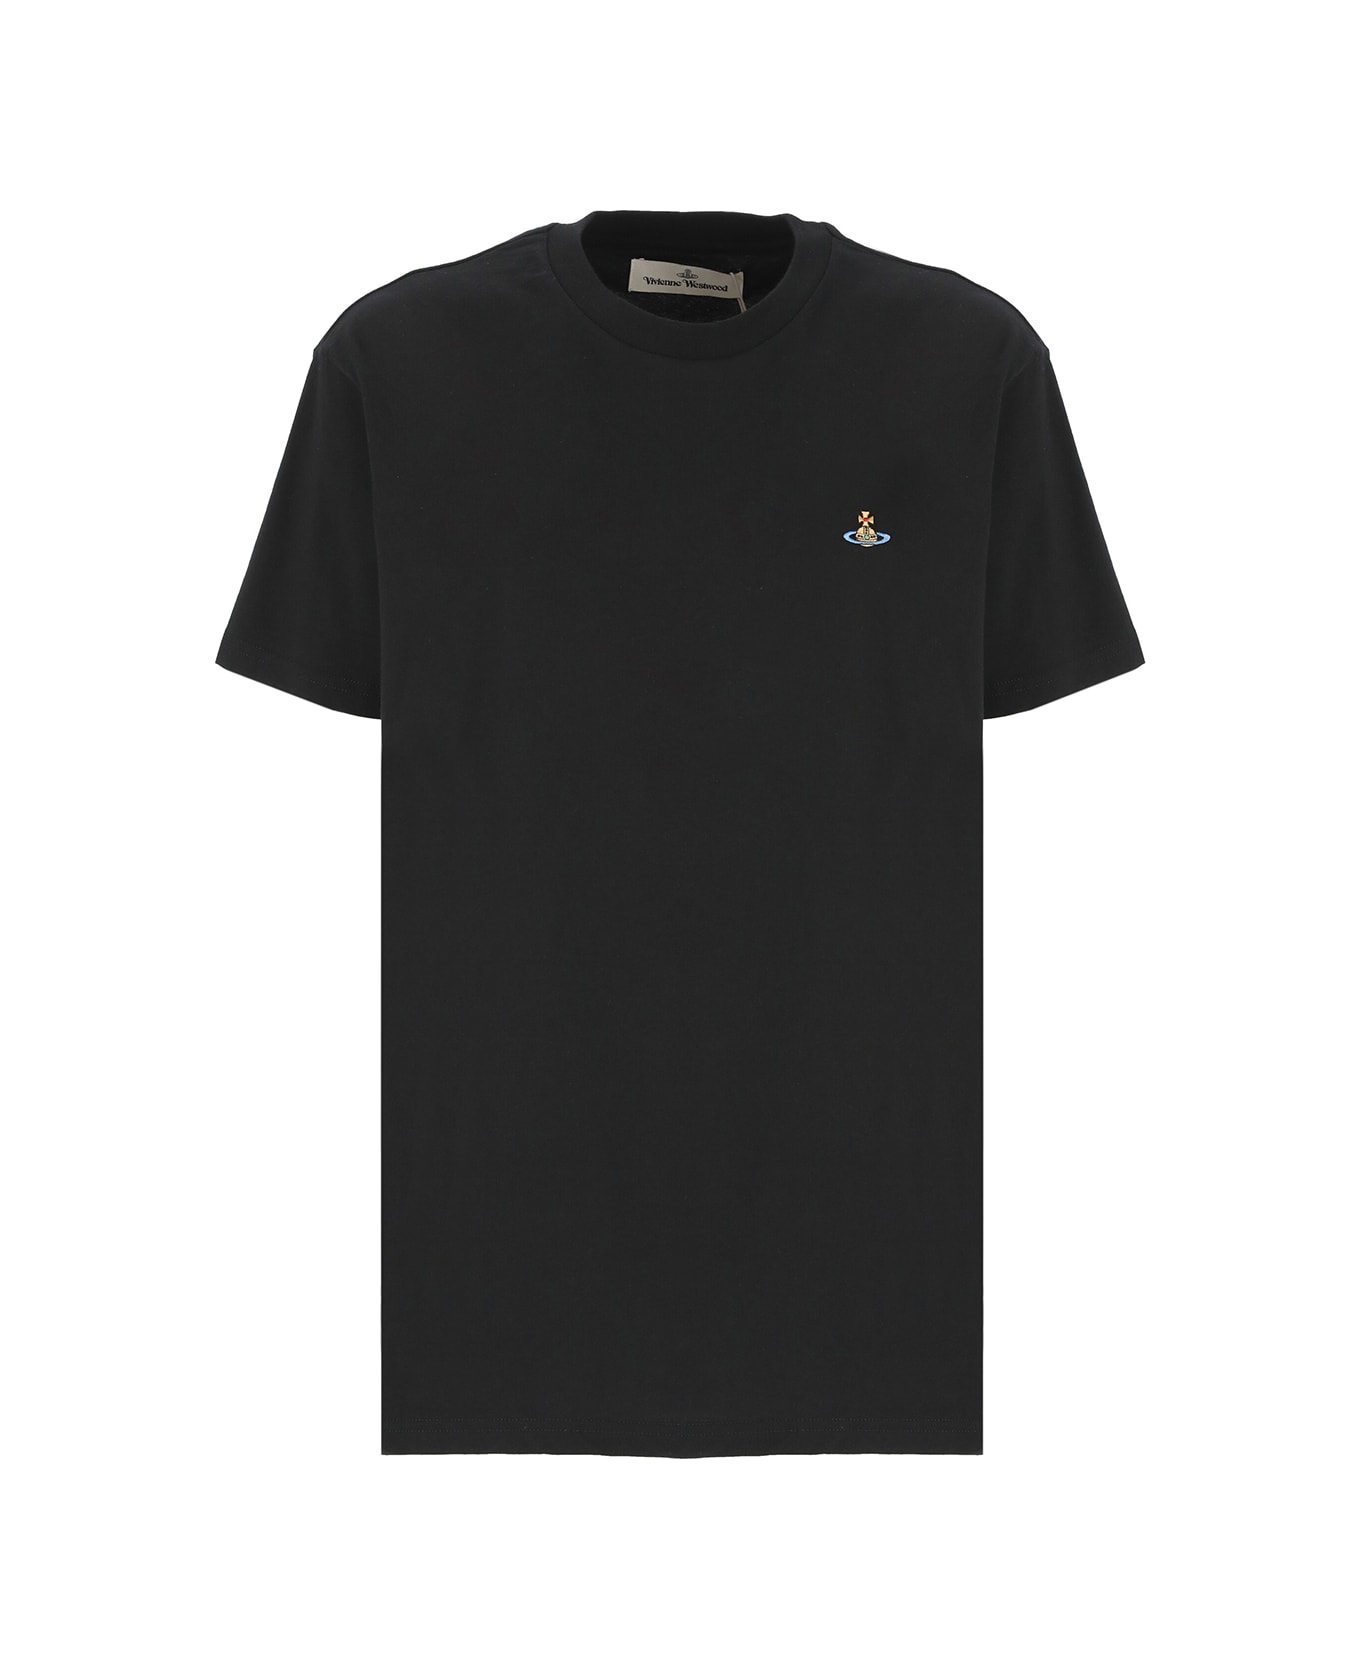 Vivienne Westwood Classic Orb T-shirt - Black